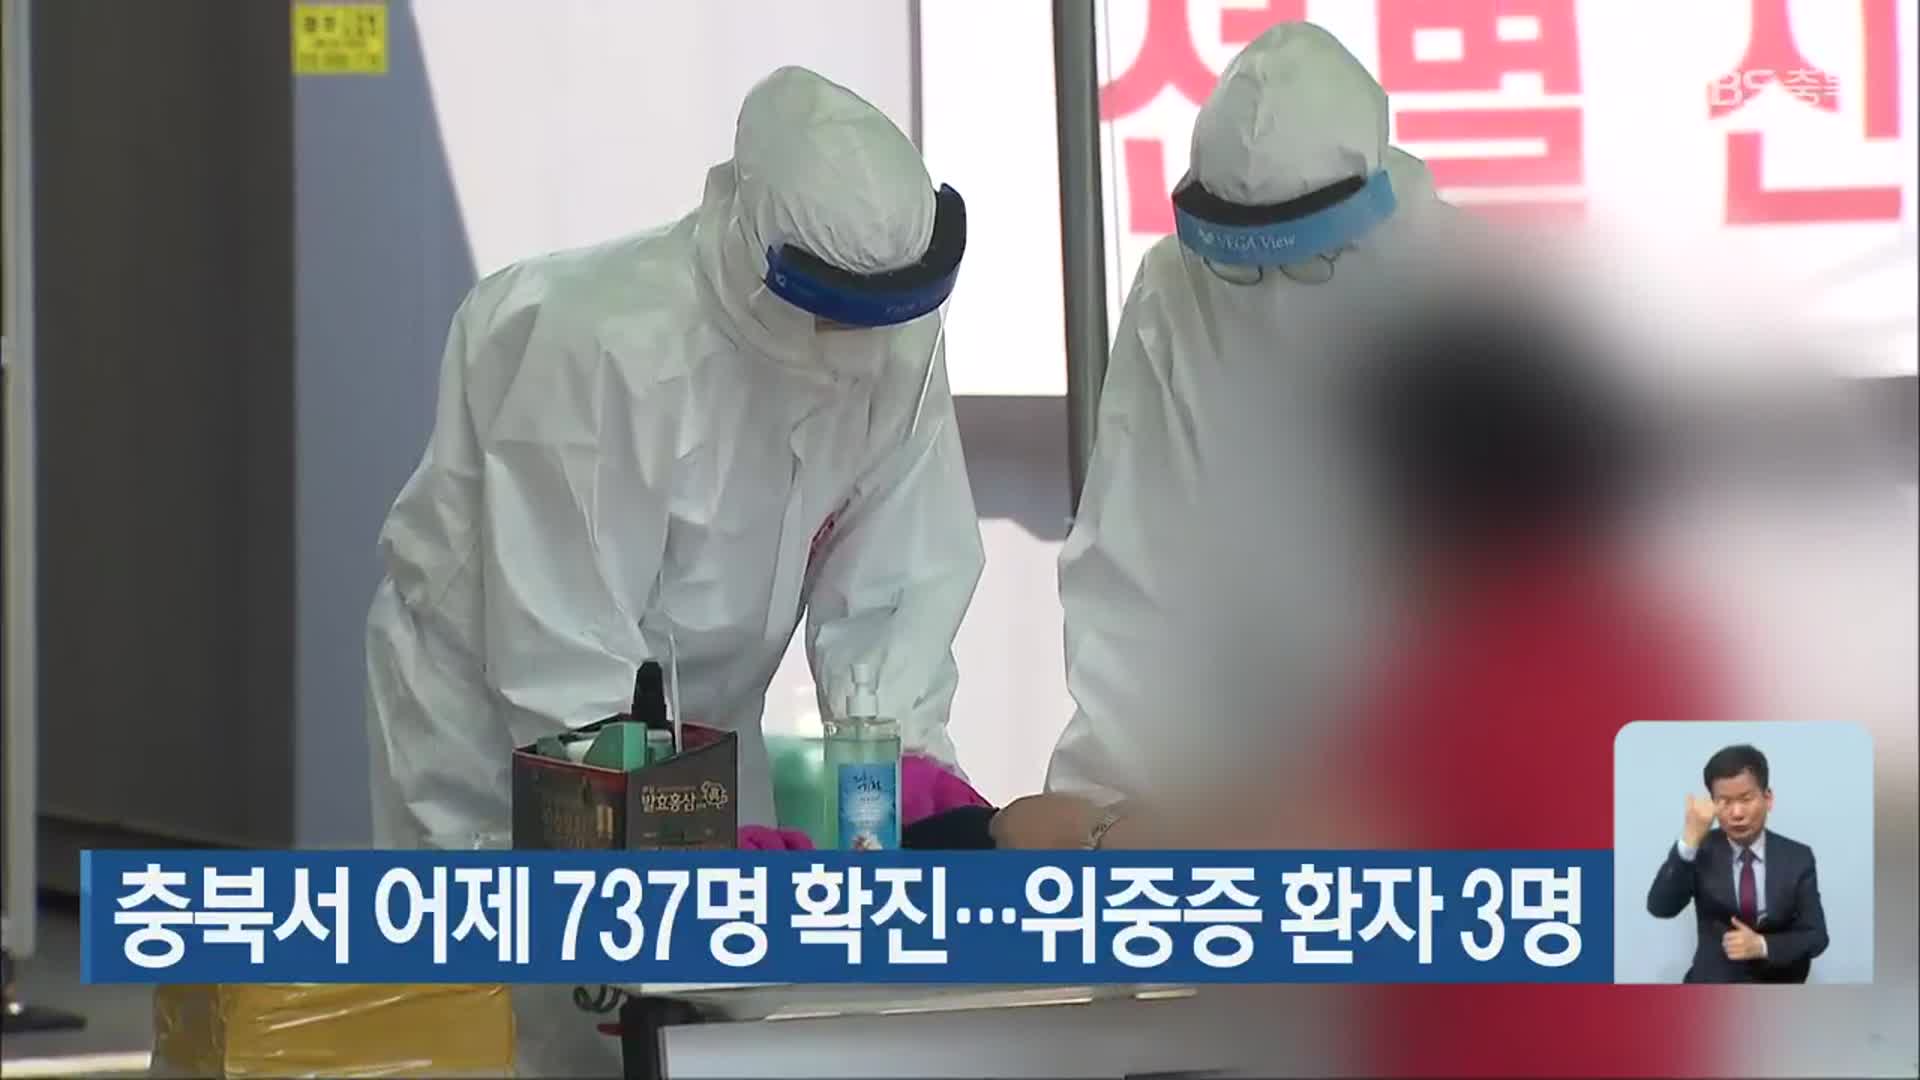 충북서 어제 737명 확진…위중증 환자 3명